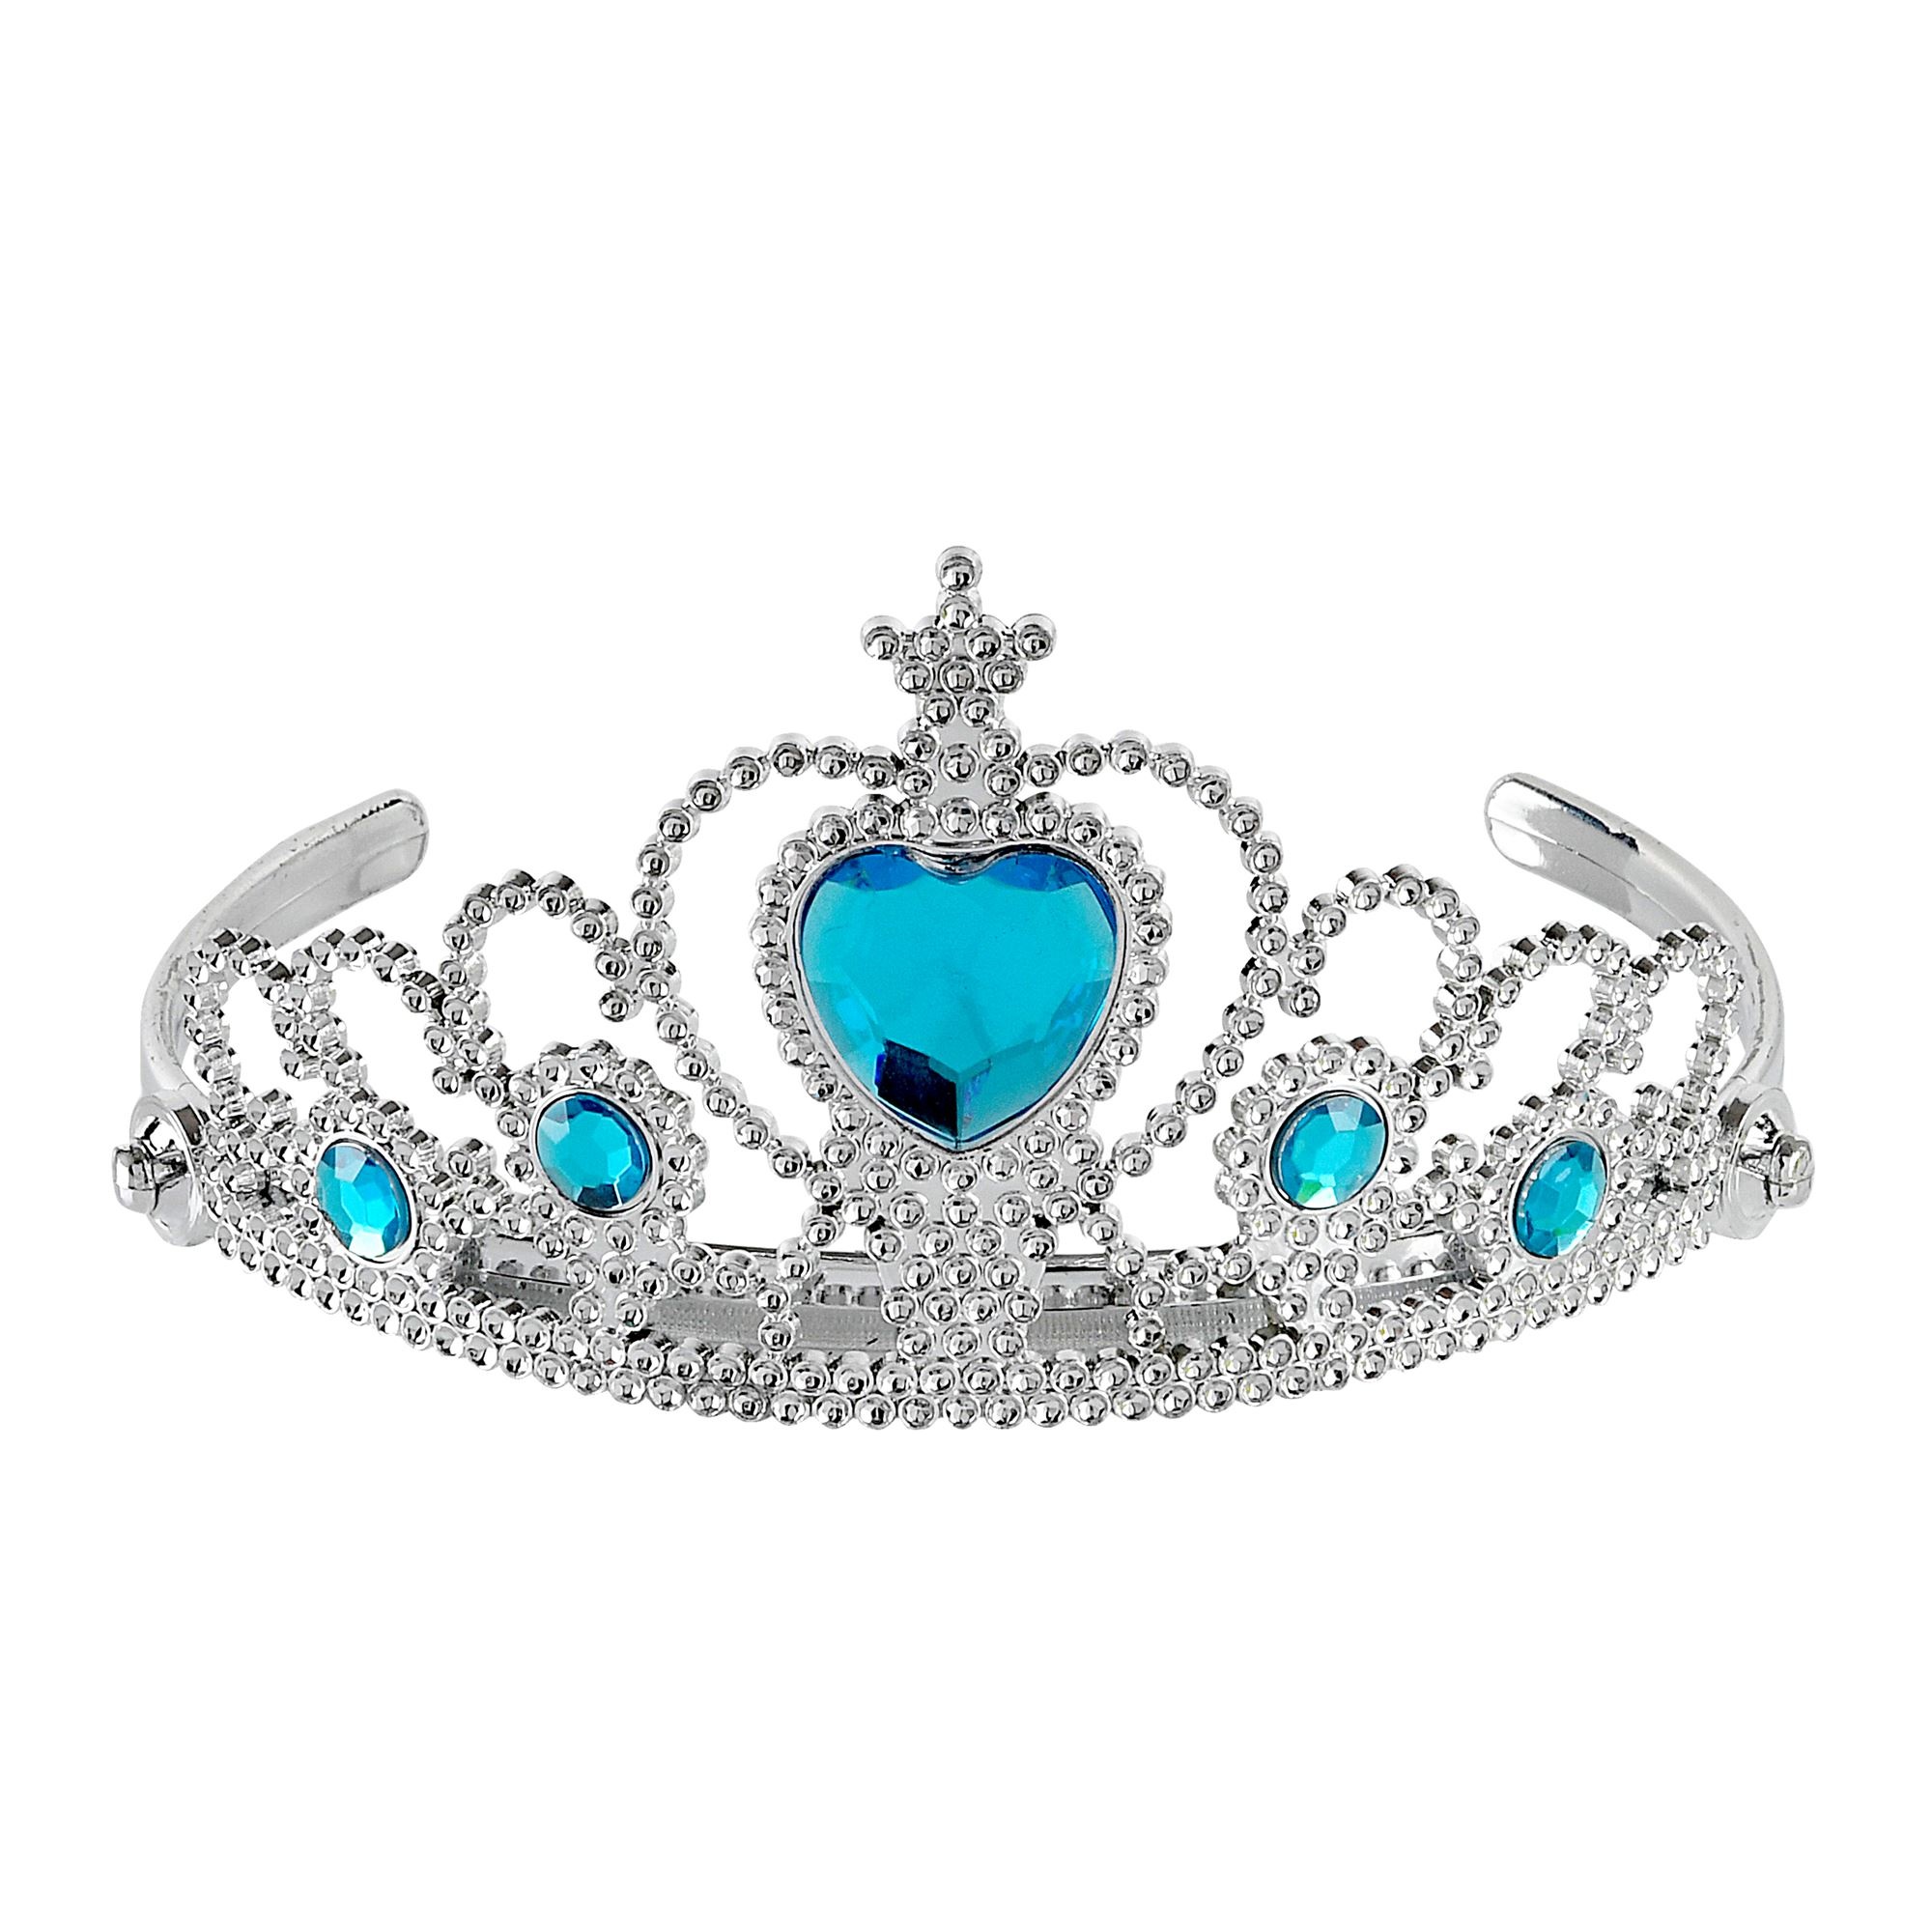 Beschietingen kast Langskomen tiara zilver met turquise steentjes - e-Carnavalskleding